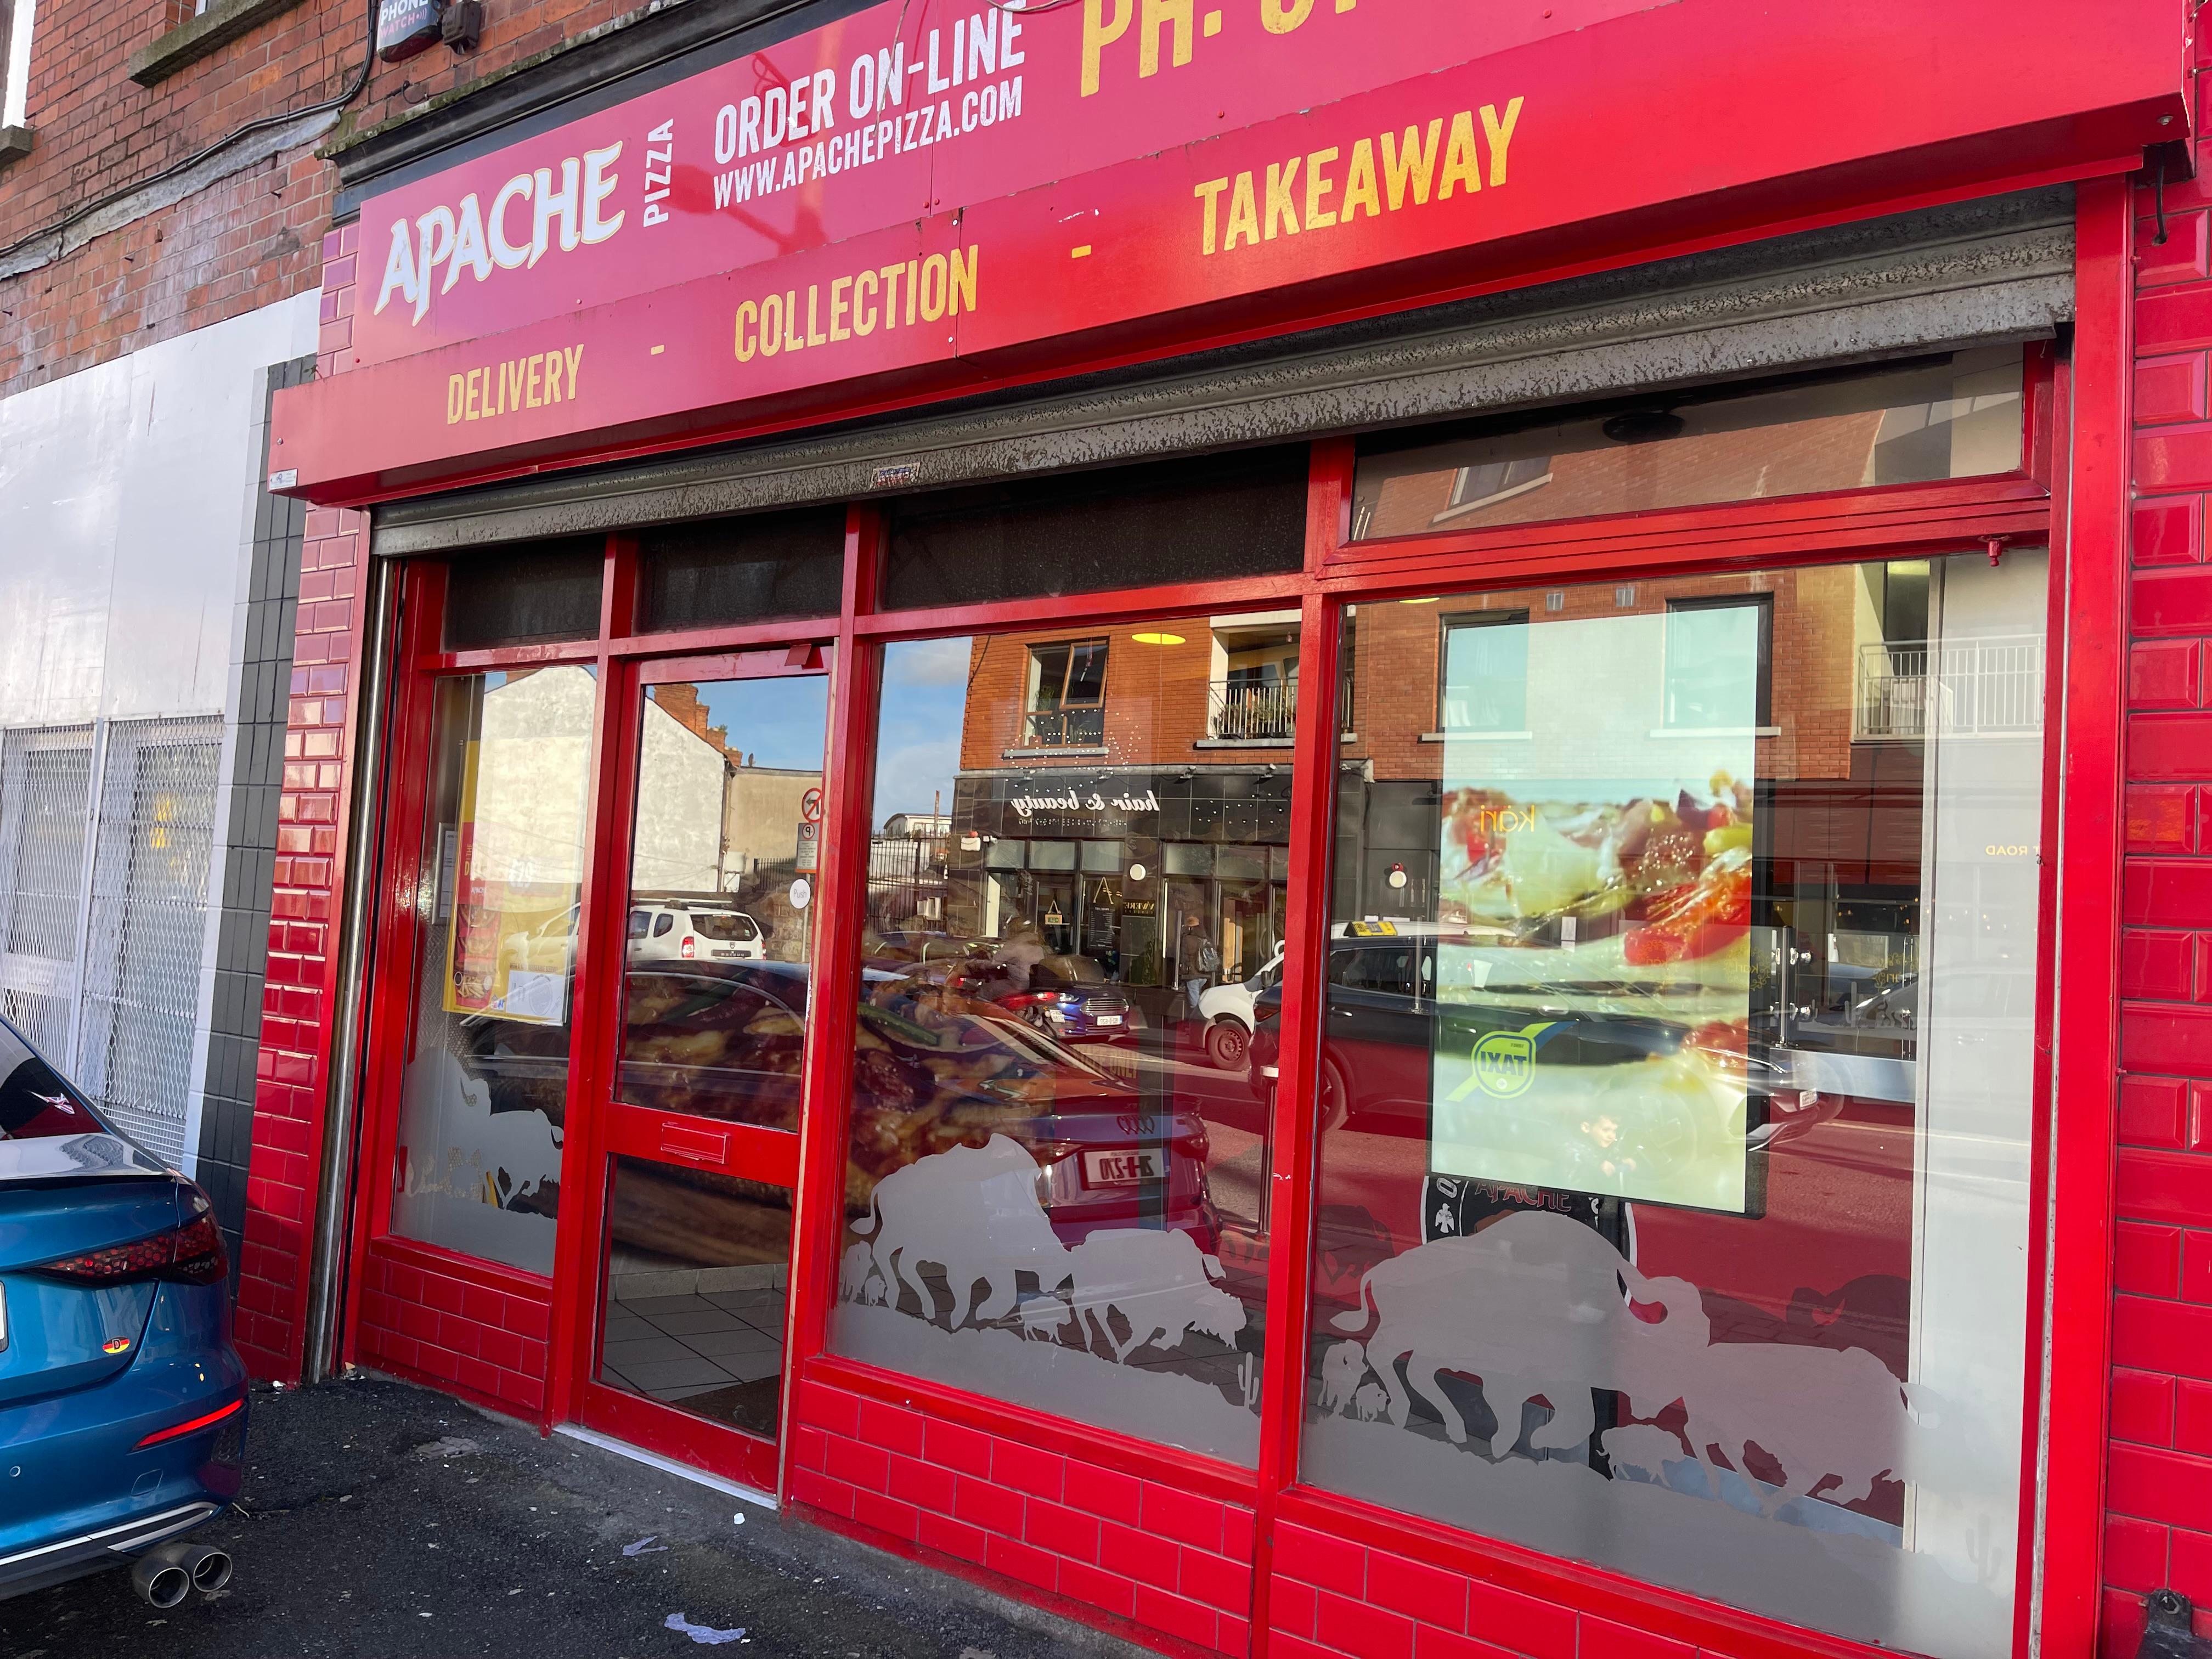 Incicore Store Front Apache Pizza Inchicore Dublin (01) 442 1028